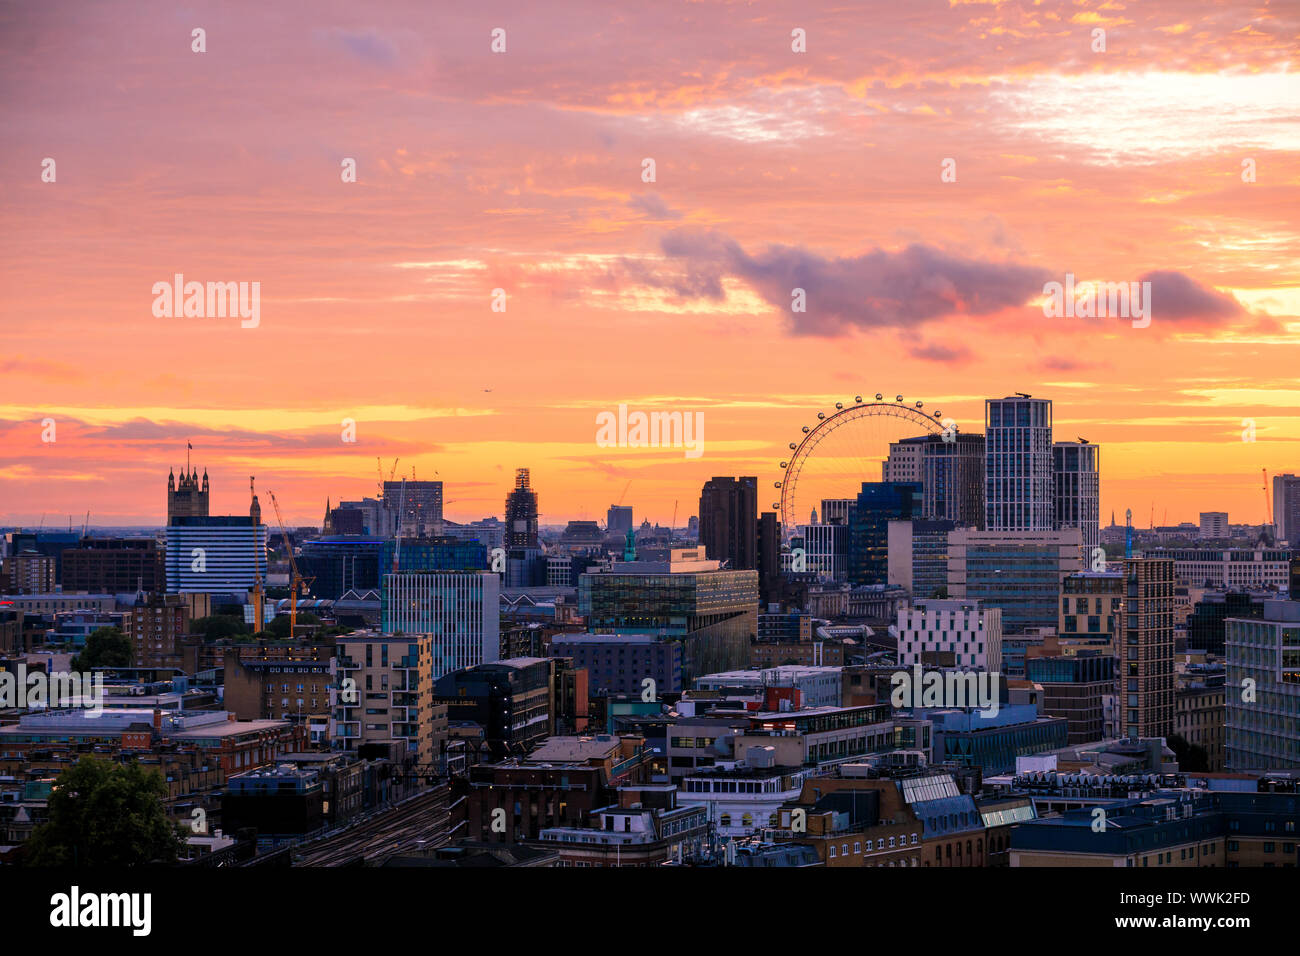 Blick auf den atemberaubenden Sonnenuntergang über dem Horizont in der vergangenen Nacht in London von der London Bridge. Durchwachsenes Wetter ist für das Wochenende prognostiziert. Stockfoto